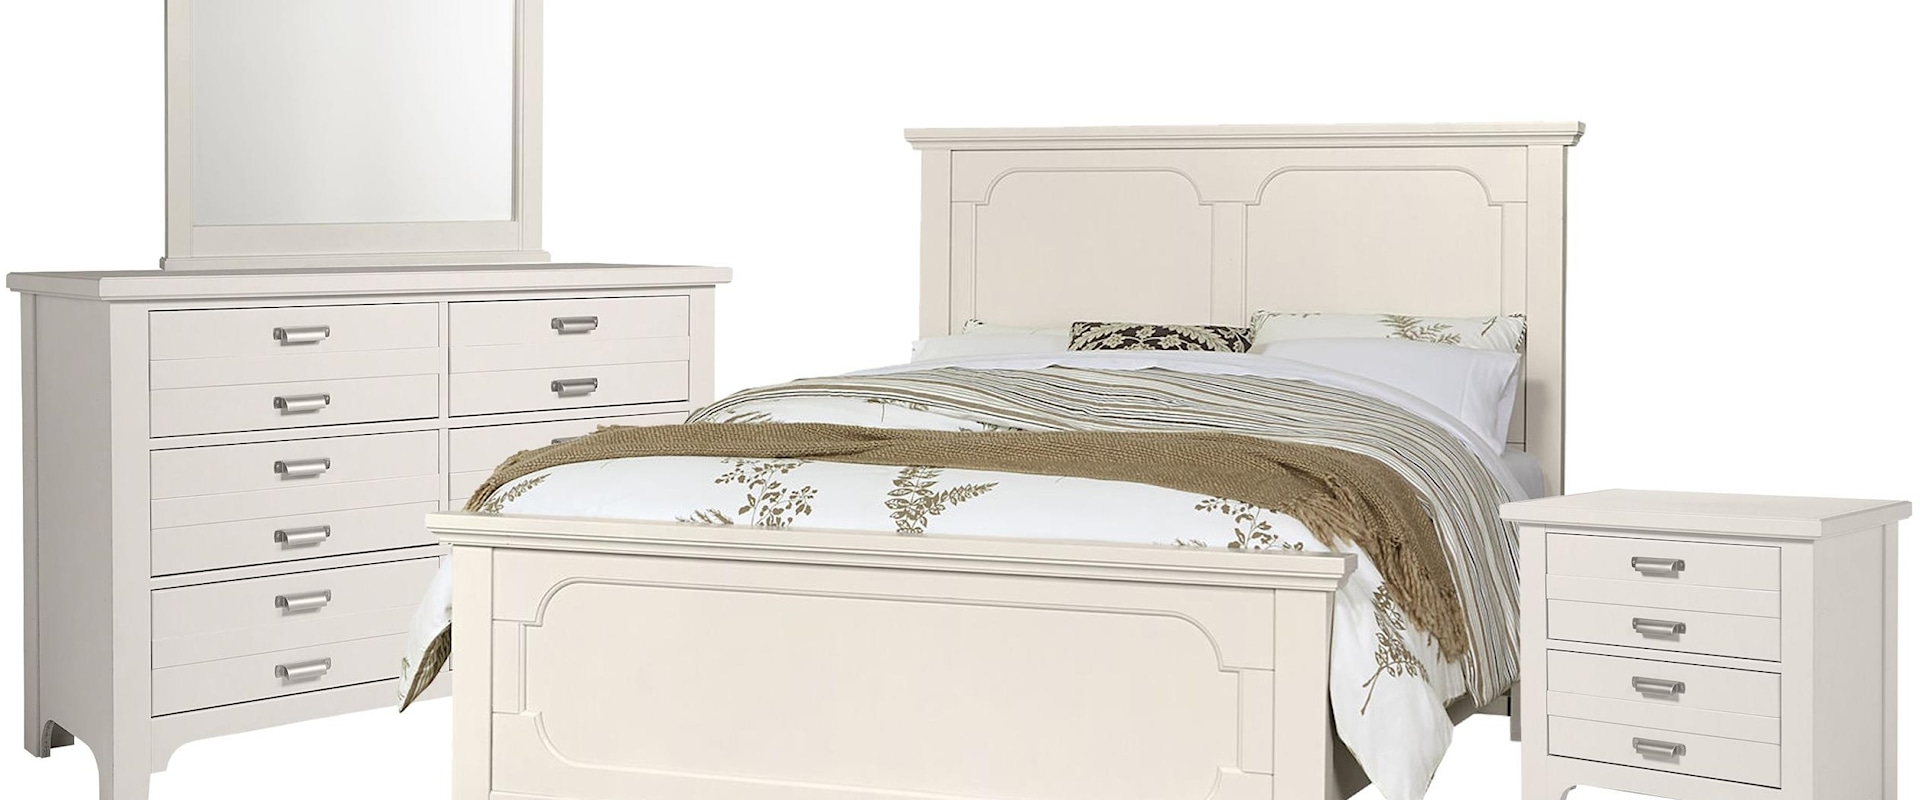 Queen Panel Bed, Double Dresser, Landscape Mirror, 2 Drawer Nightstand